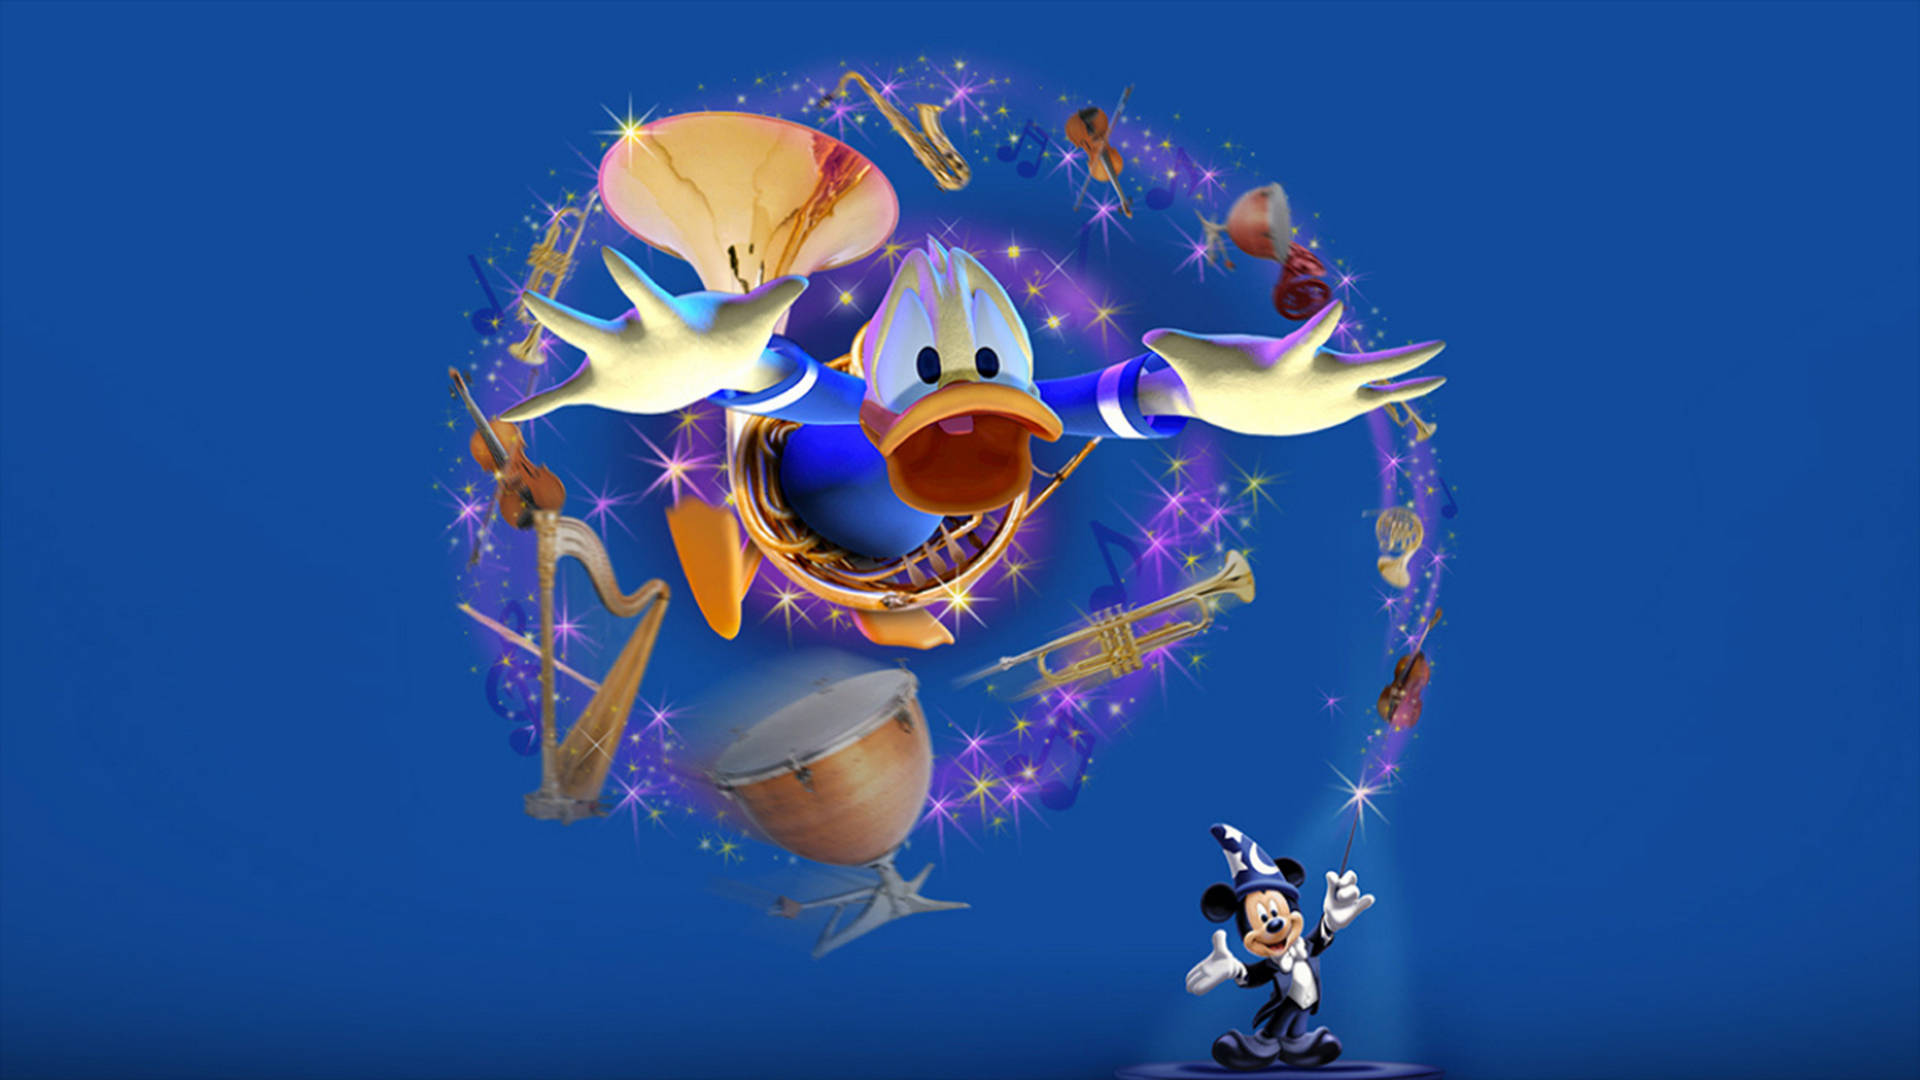 Papelde Parede Com O Donald Duck Mágico Em 3d. Papel de Parede